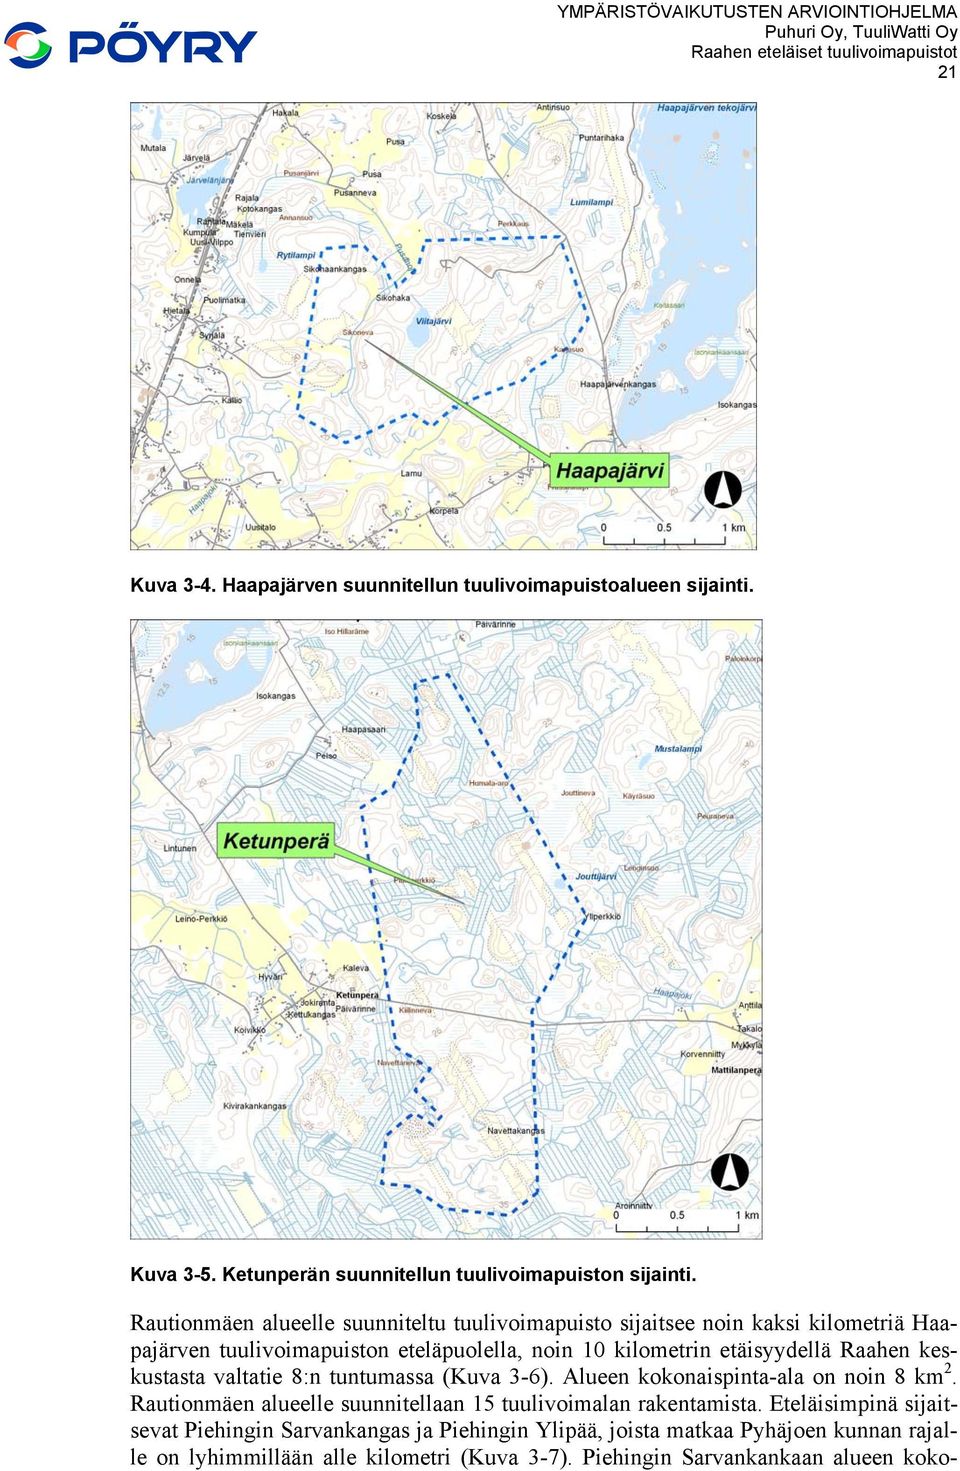 Raahen keskustasta valtatie 8:n tuntumassa (Kuva 3-6). Alueen kokonaispinta-ala on noin 8 km 2. Rautionmäen alueelle suunnitellaan 15 tuulivoimalan rakentamista.